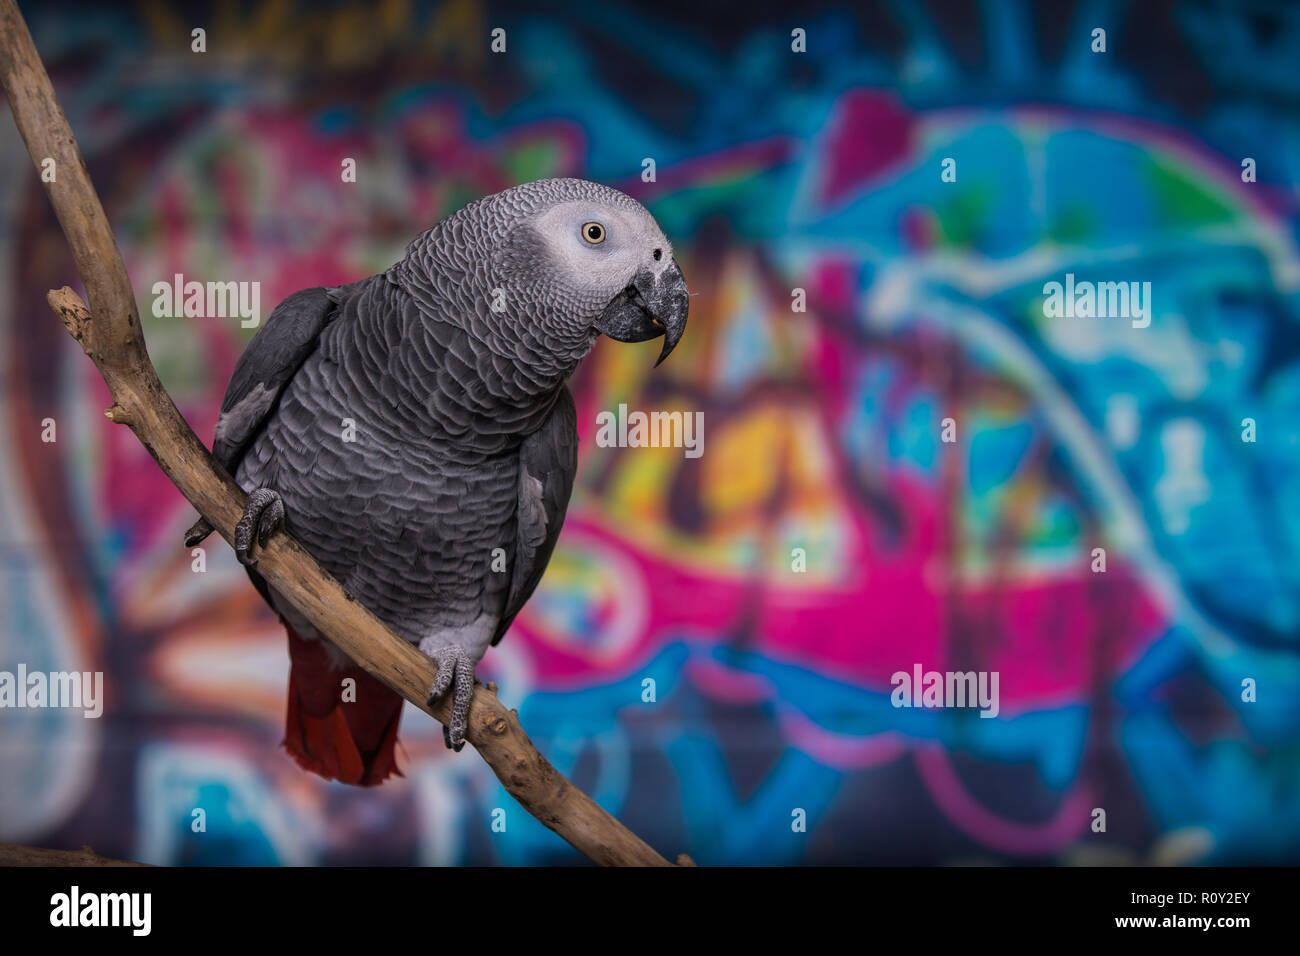 Bunte Wand im grafitti mit Haustier Vogel Graupapagei vor gemalt. Beliebte Haustiere und für ihre Fähigkeit, menschliche Sprache zu imitieren bekannte Stockfoto